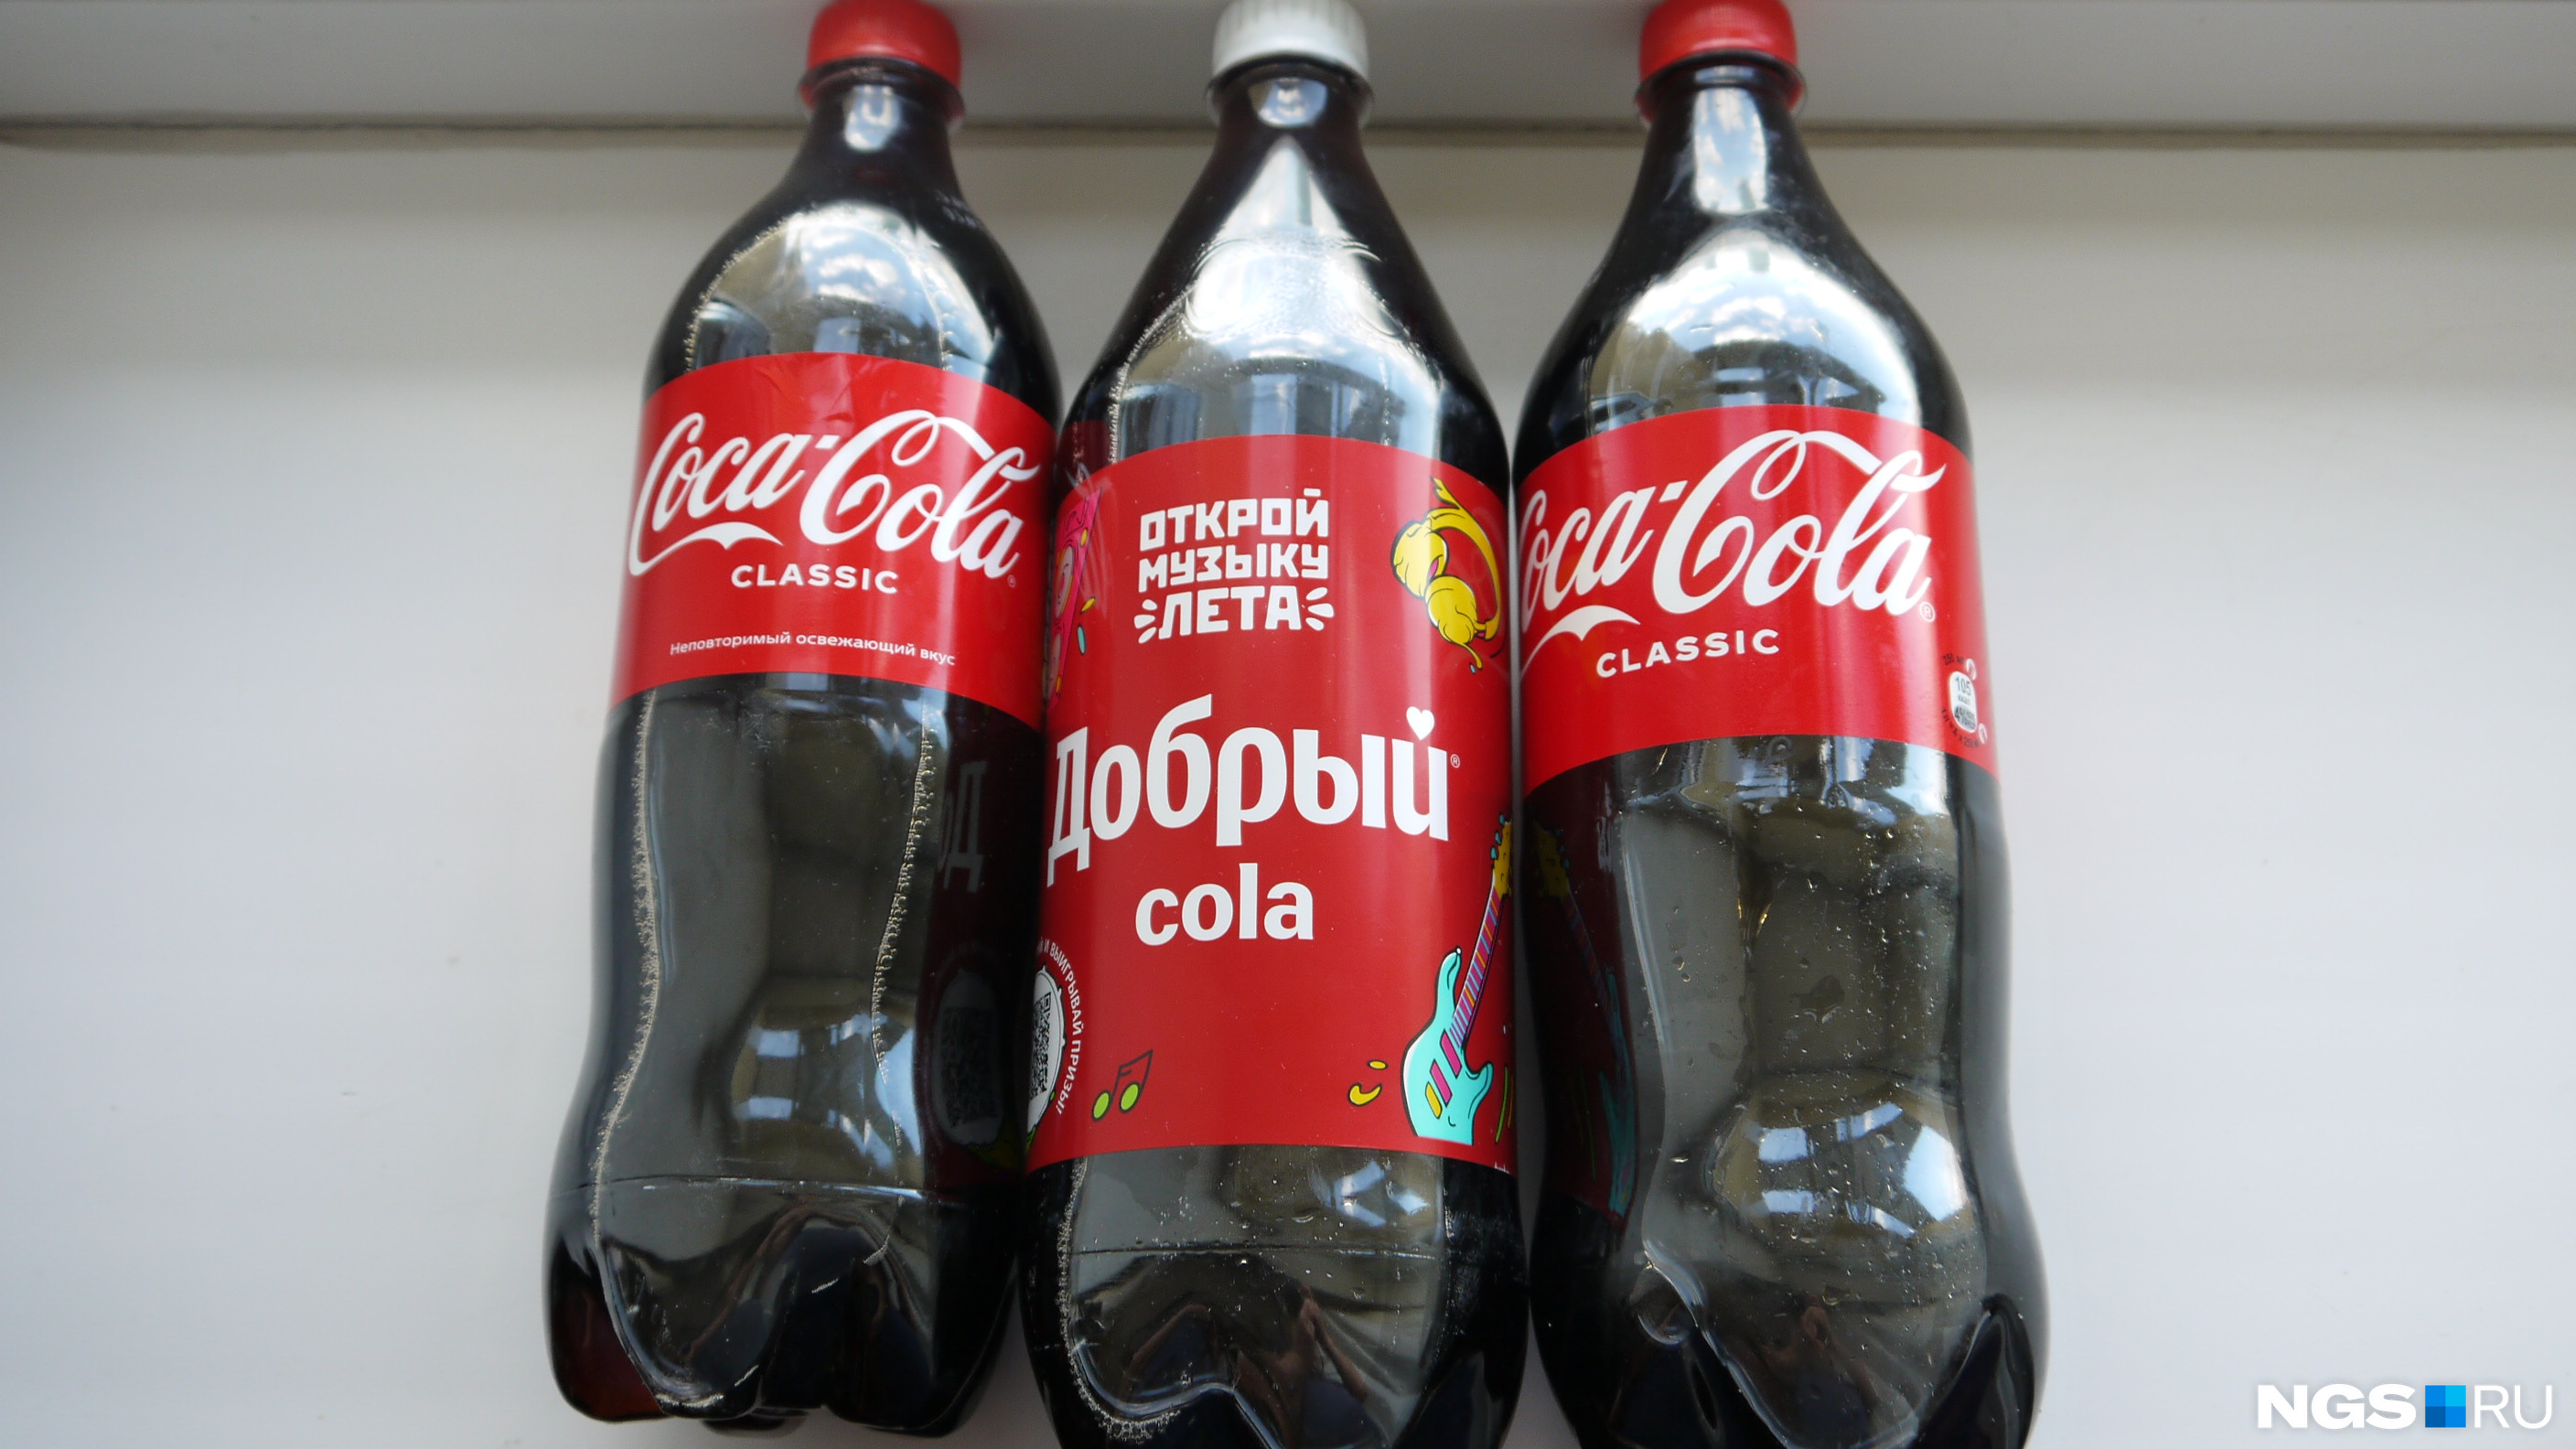 Вкусы колы добрый. Бутылка Кока колы. Кола в России. Кока кола фото. Поддельная Кока кола.